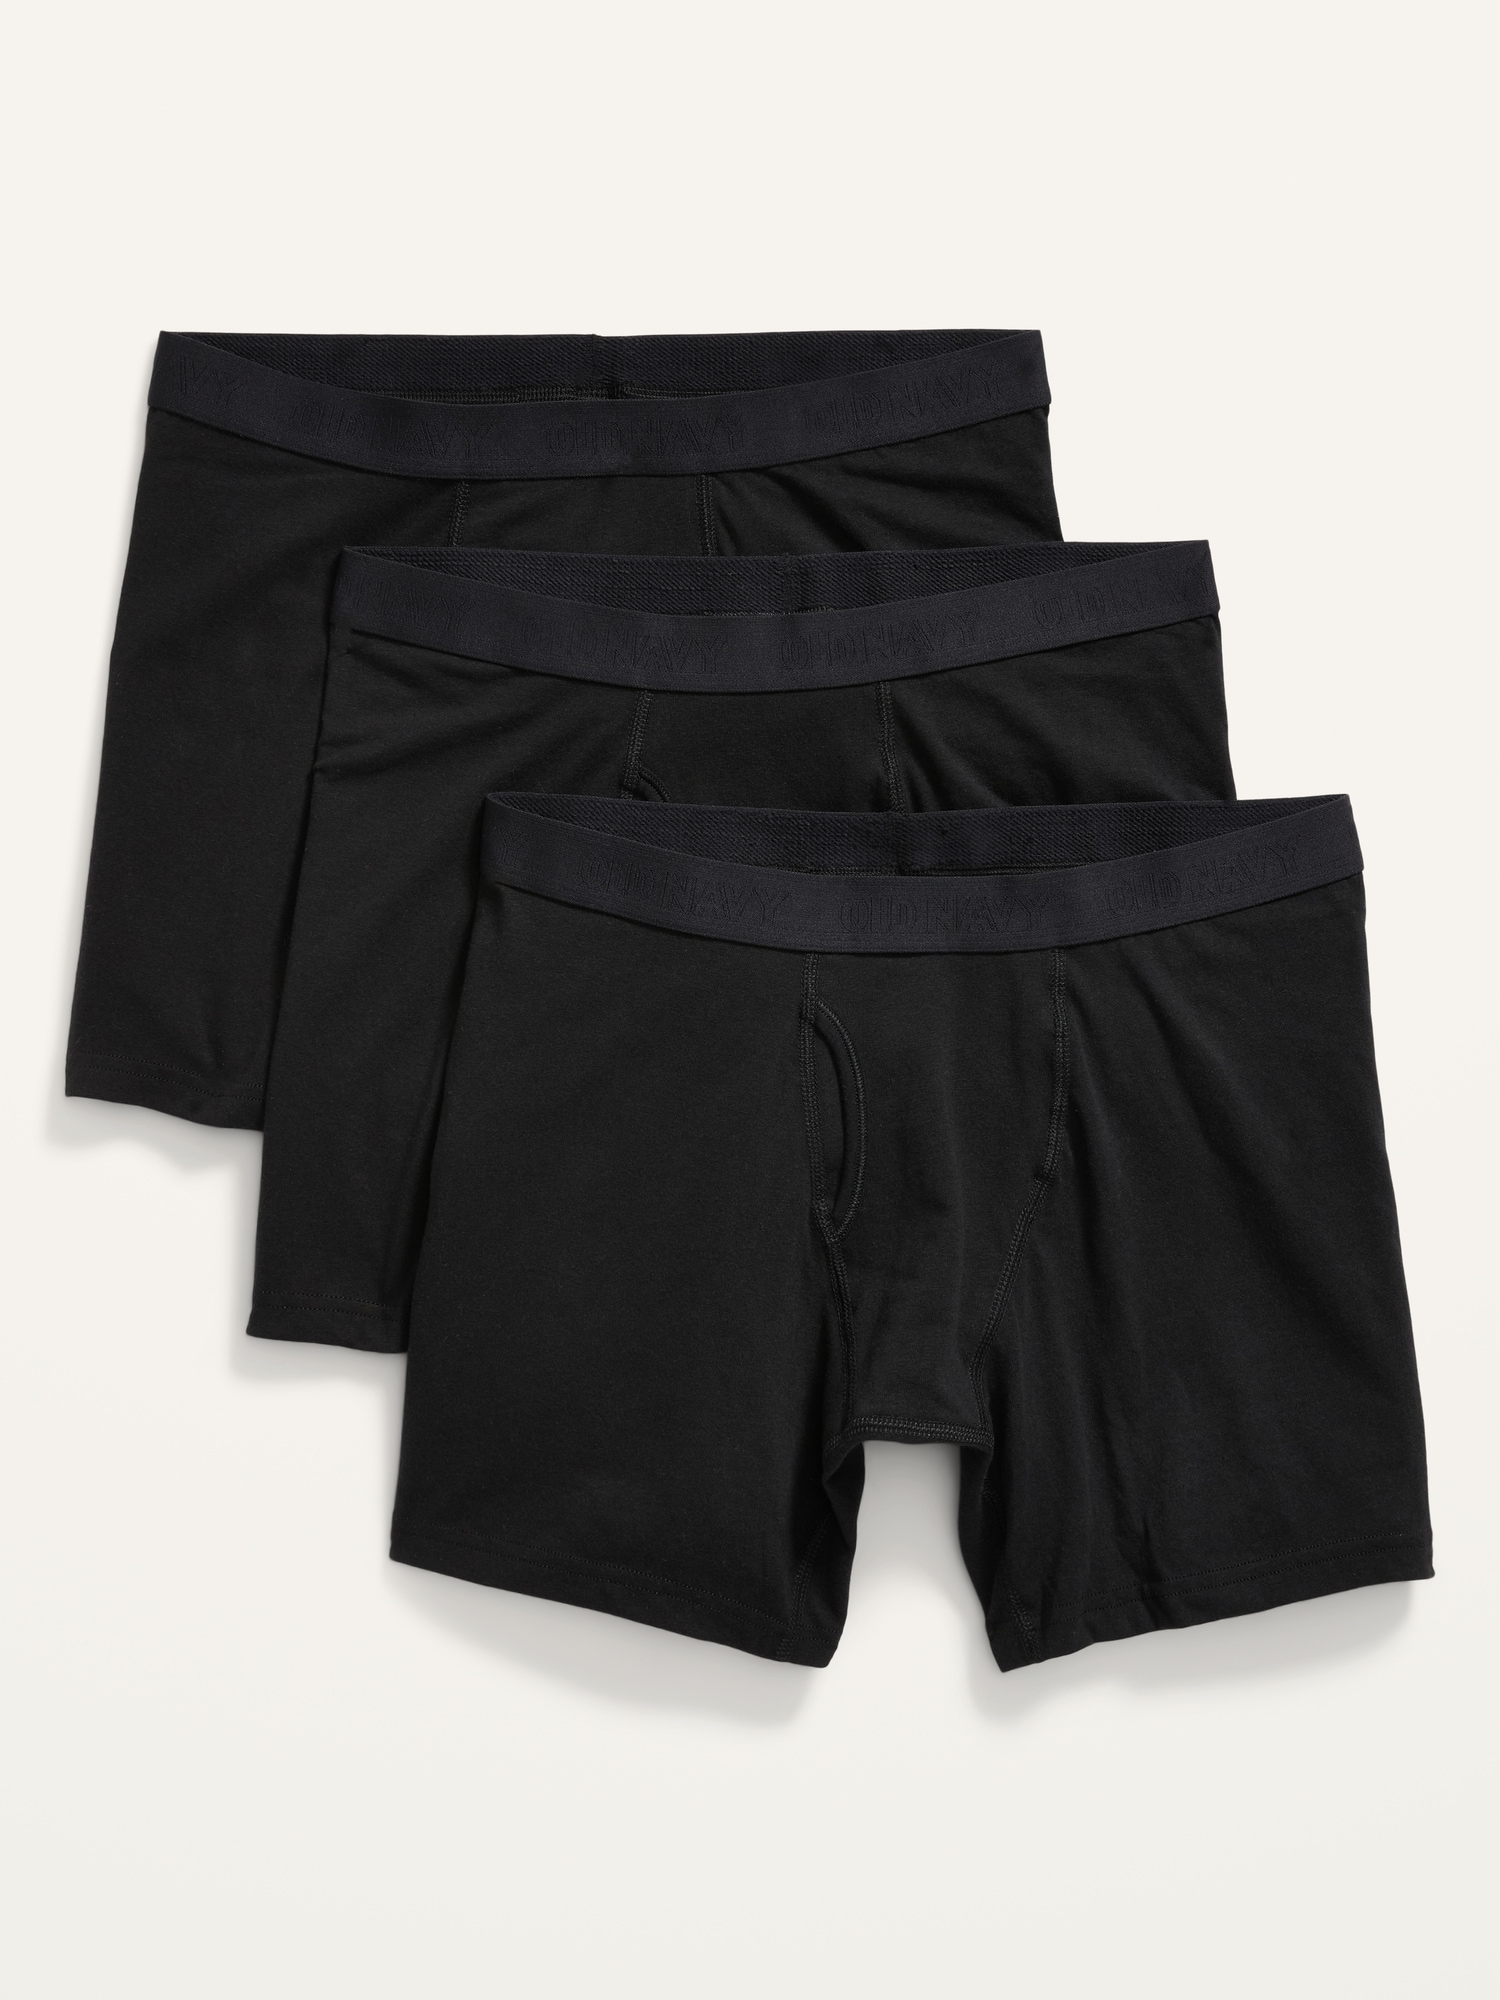 Dream Catcher Mens Underwear Boxer Briefs Cotton Boxer Briefs Underwear Men  Pack